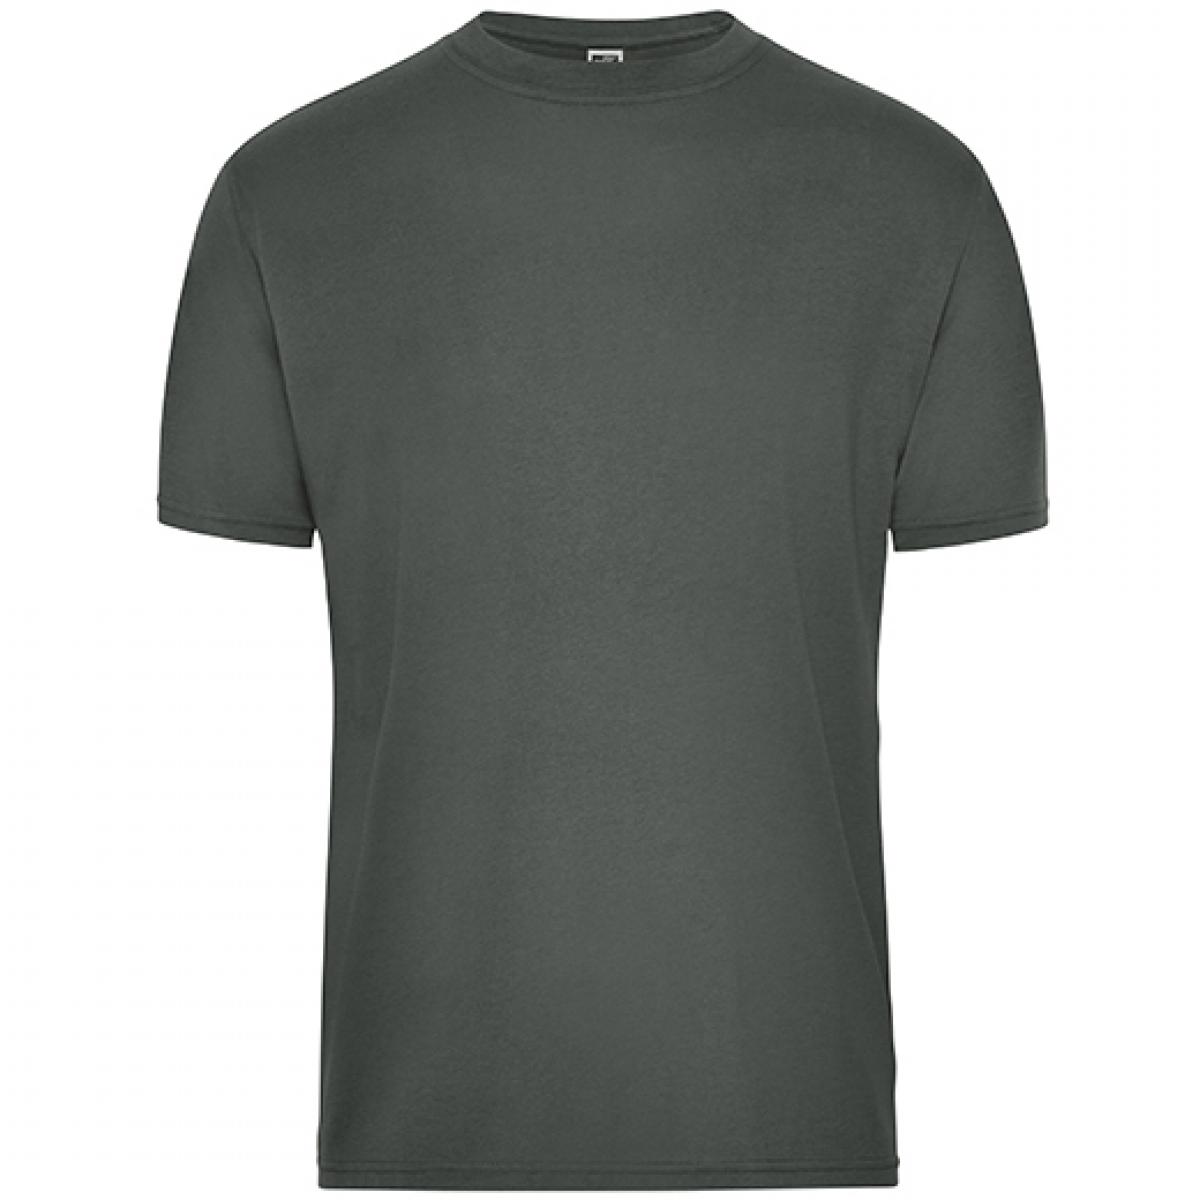 Hersteller: James+Nicholson Herstellernummer: JN1808 Artikelbezeichnung: Men‘s BIO Workwear T-Shirt, Waschbar bis 60 °C Farbe: Dark Grey (Solid)